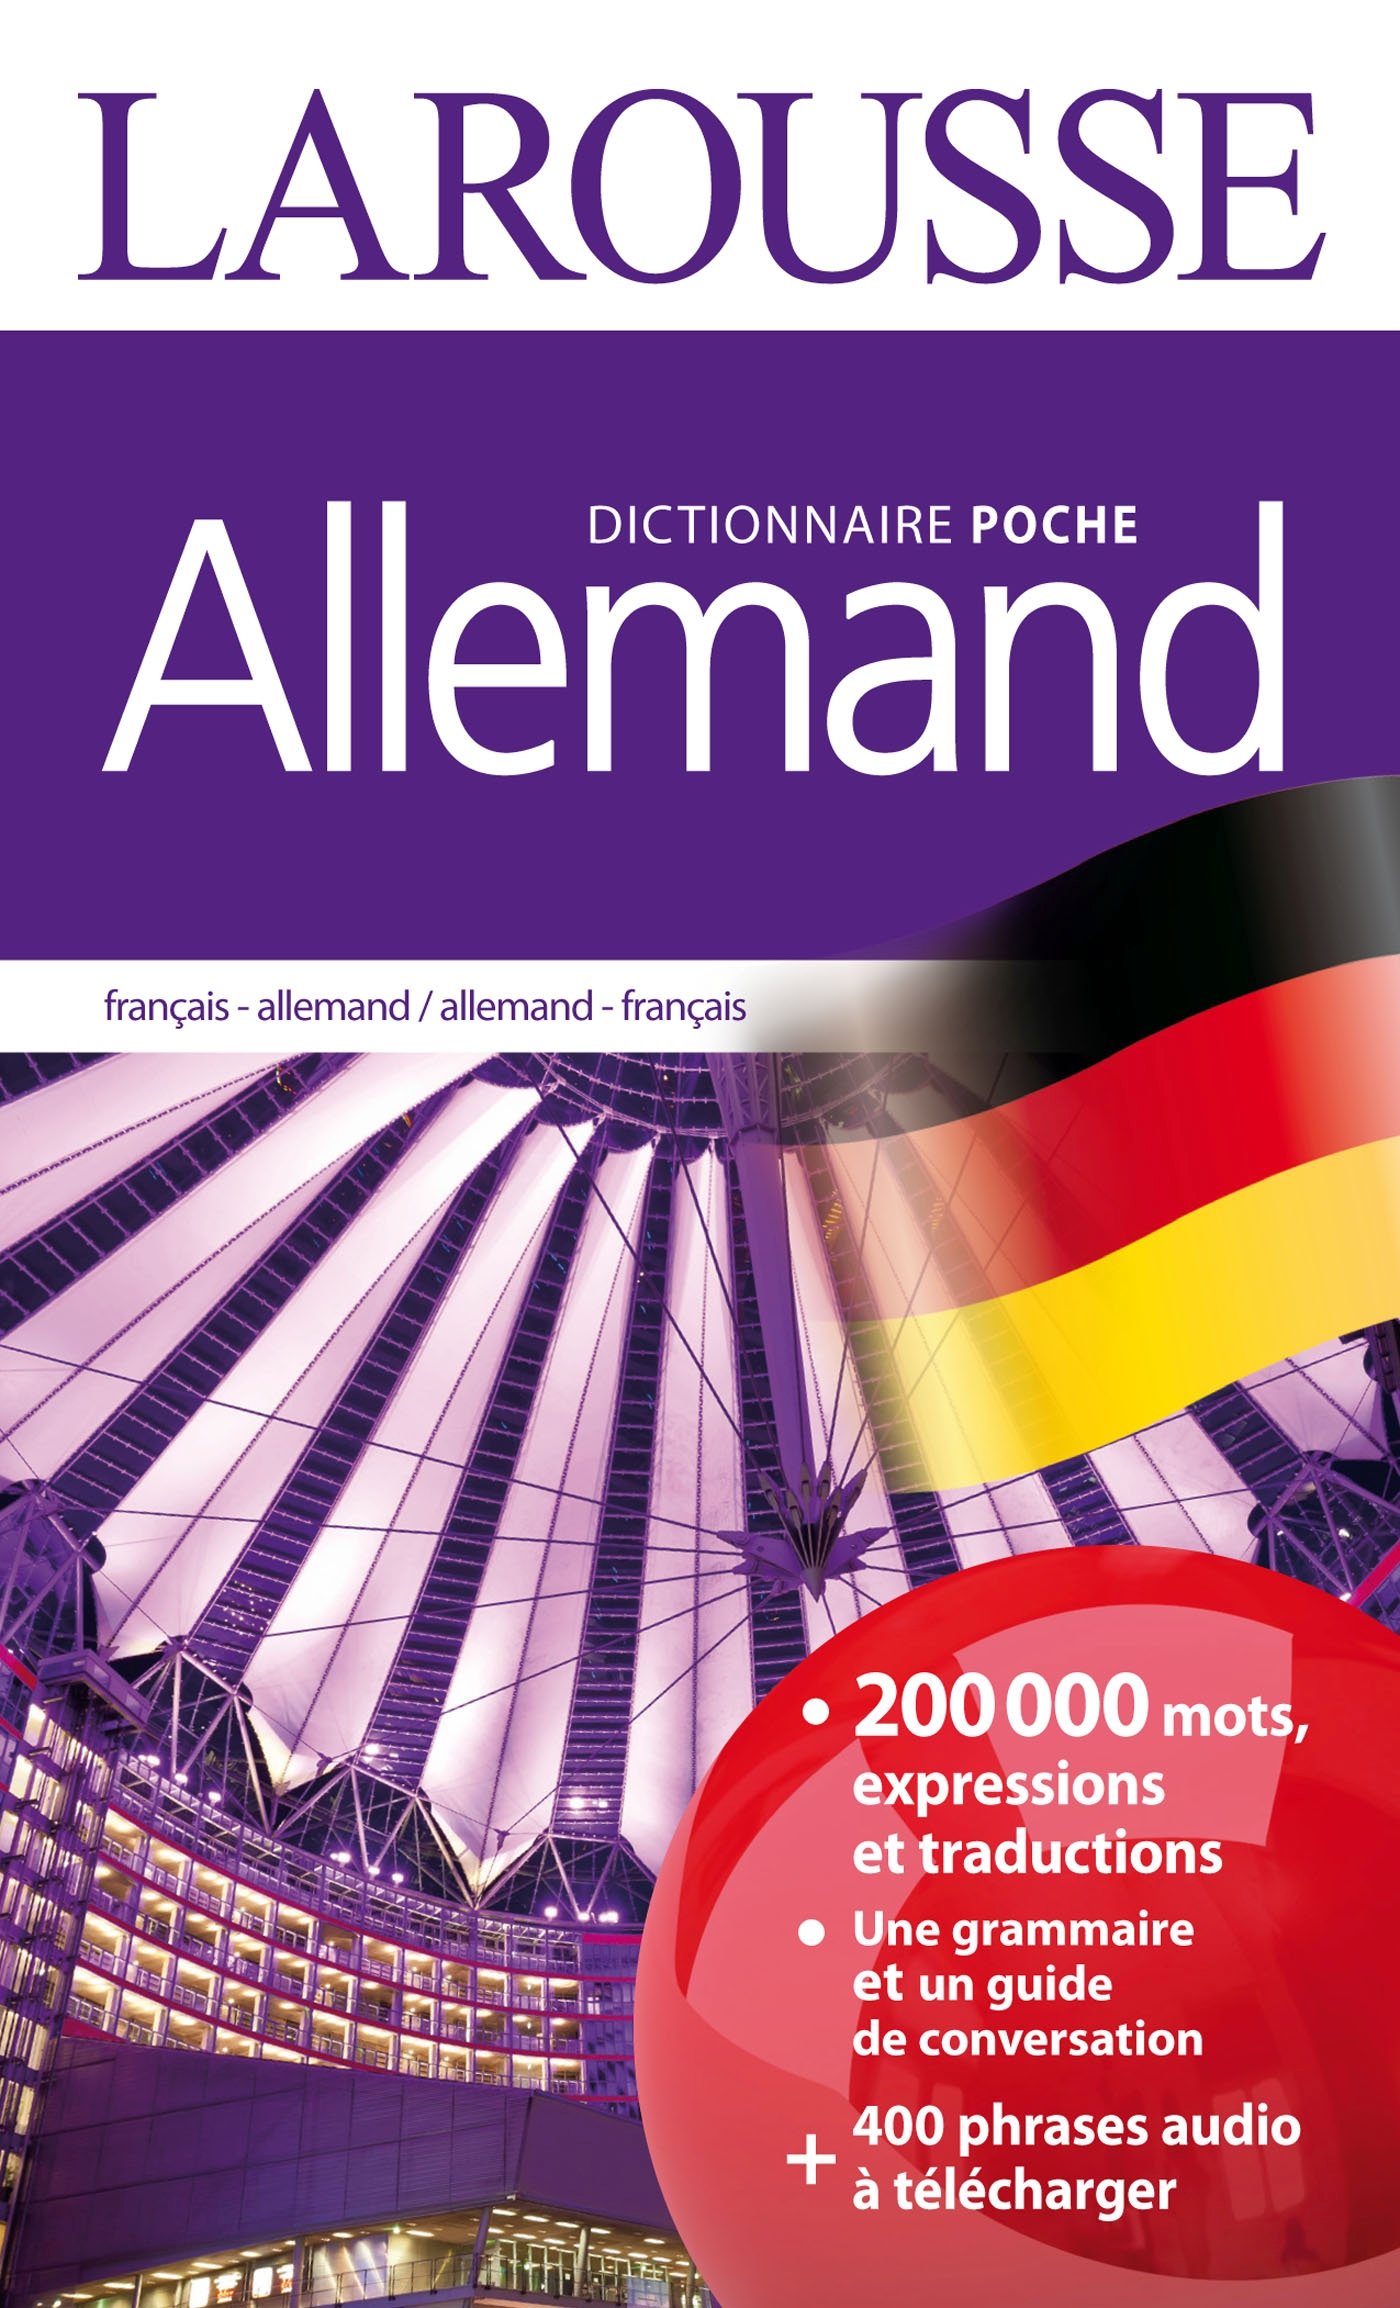 dictionnaire larousse allemand